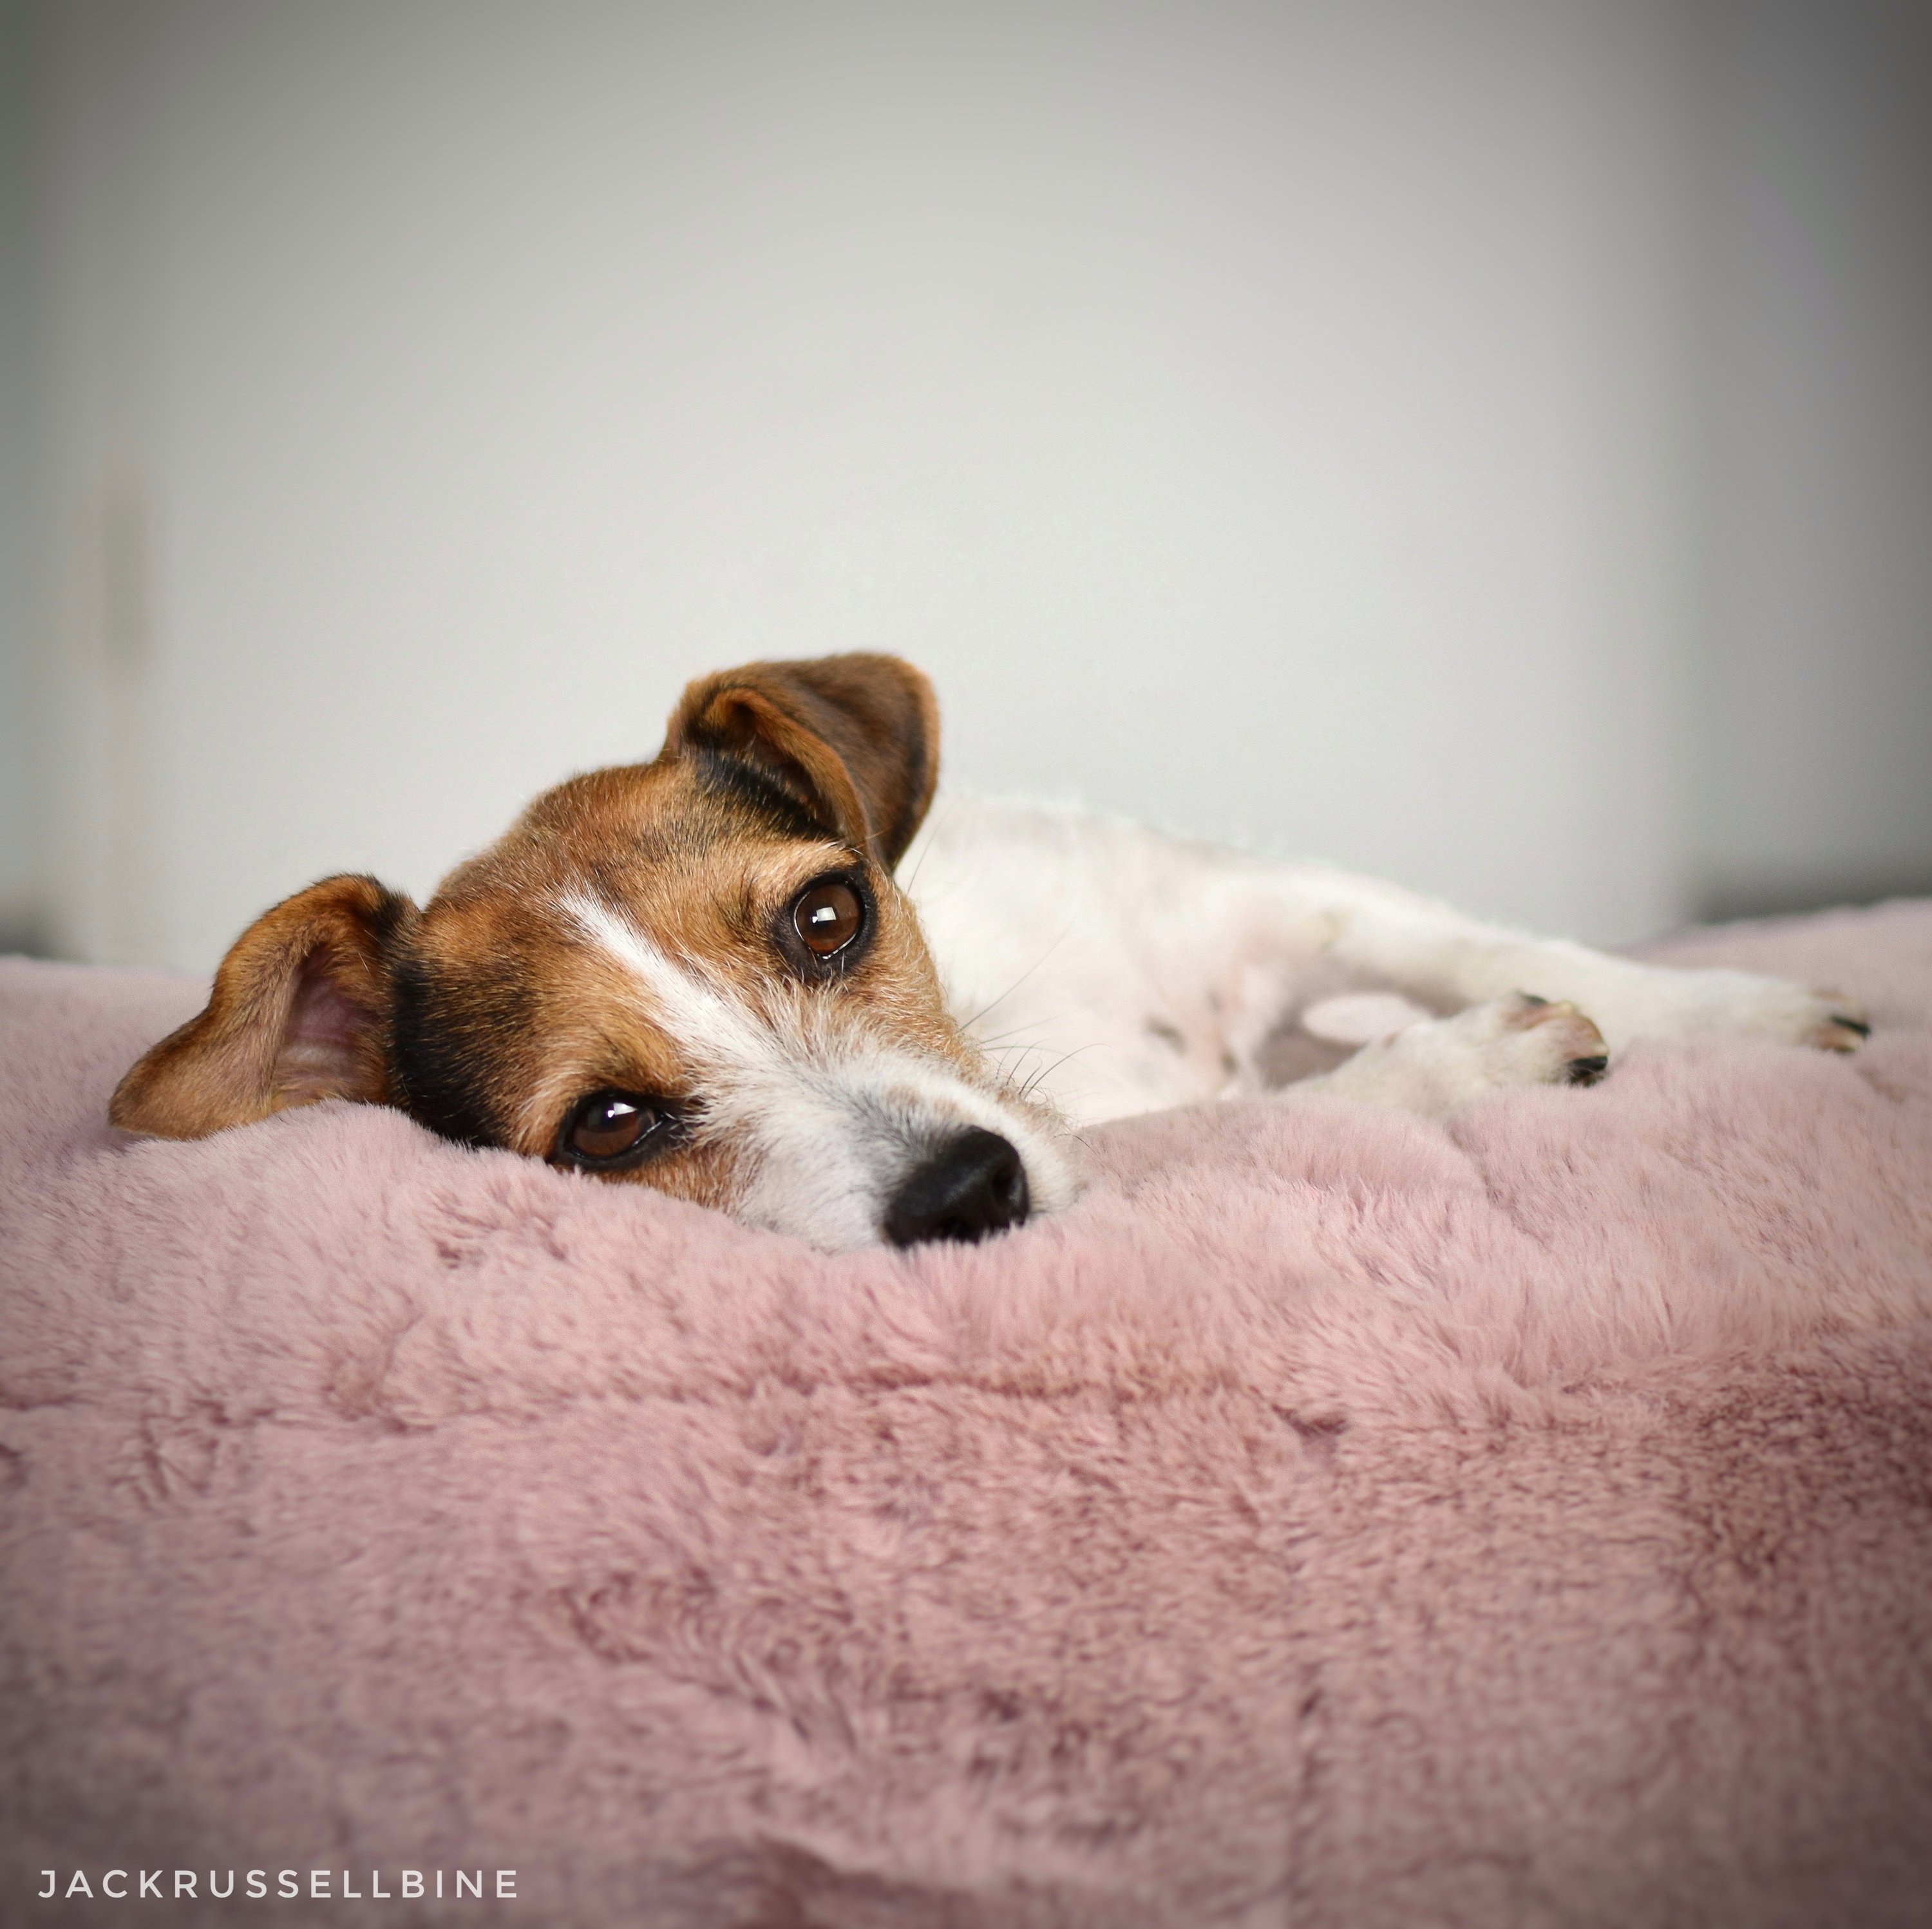 Jack Russel Terrier liegt auf rosa flauschigem orthopädischem Hundebett